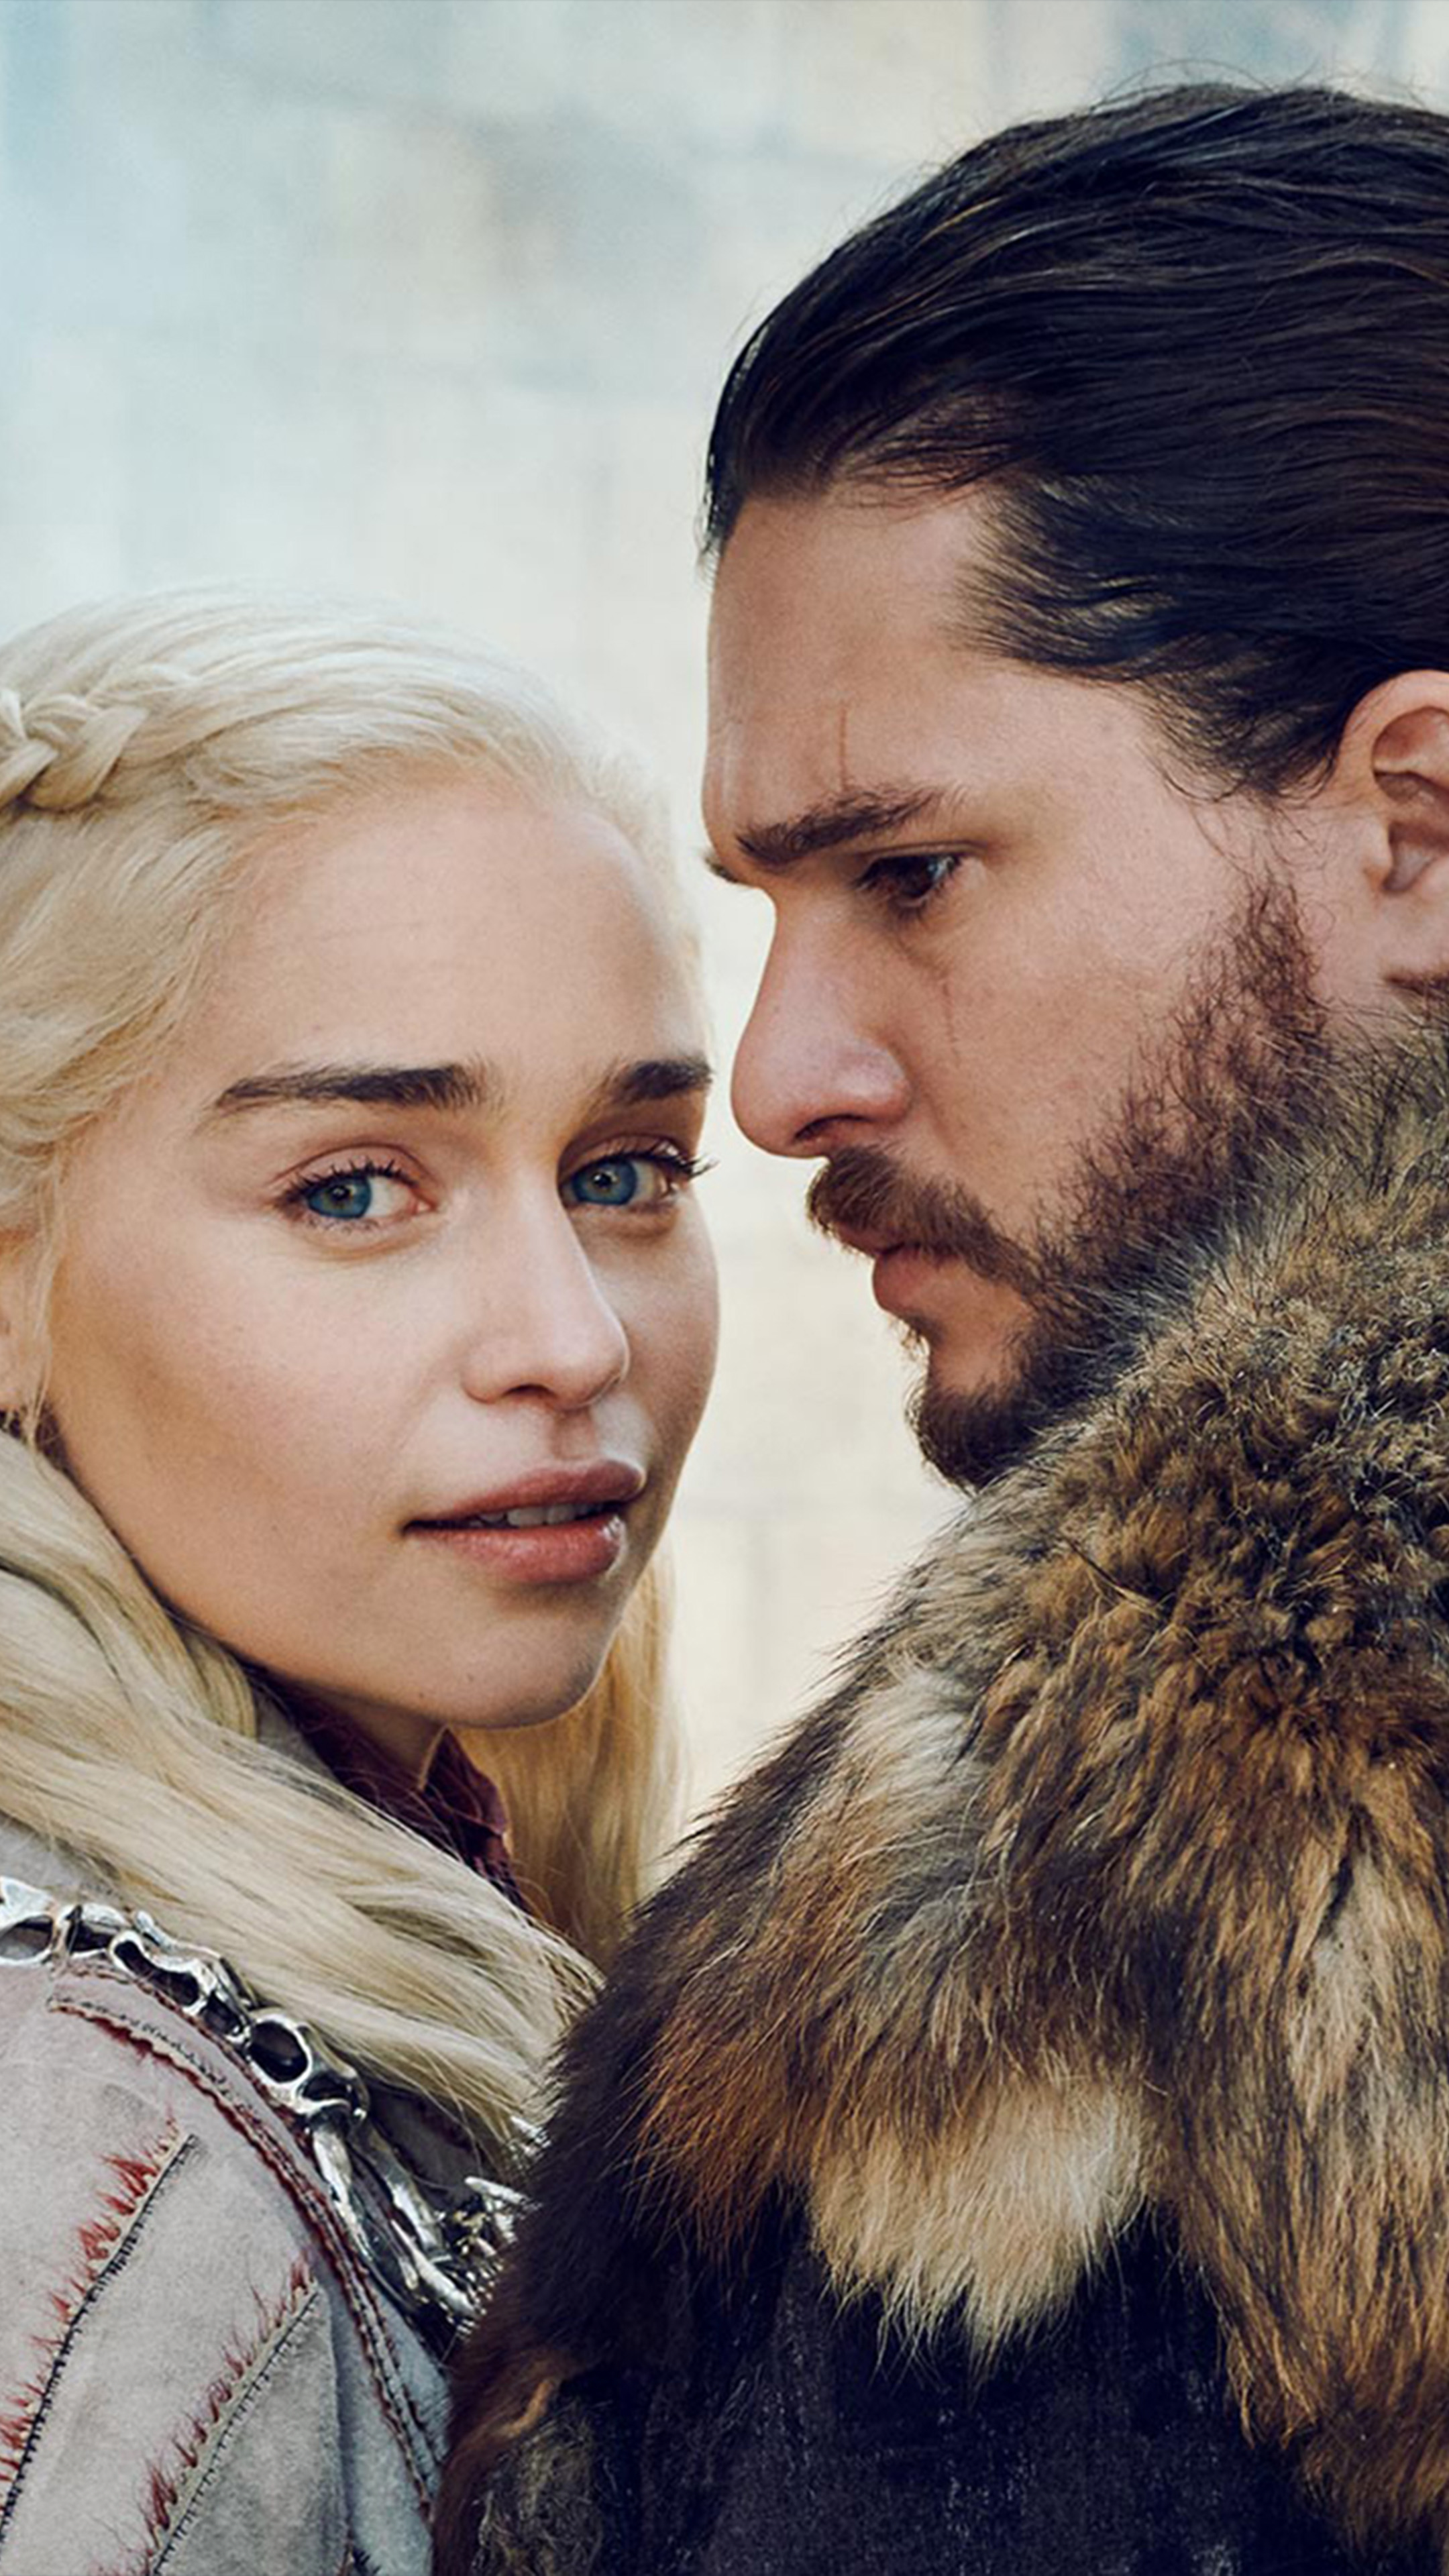 Download Daenerys Targaryen Jon Snow Game Of Thrones S8